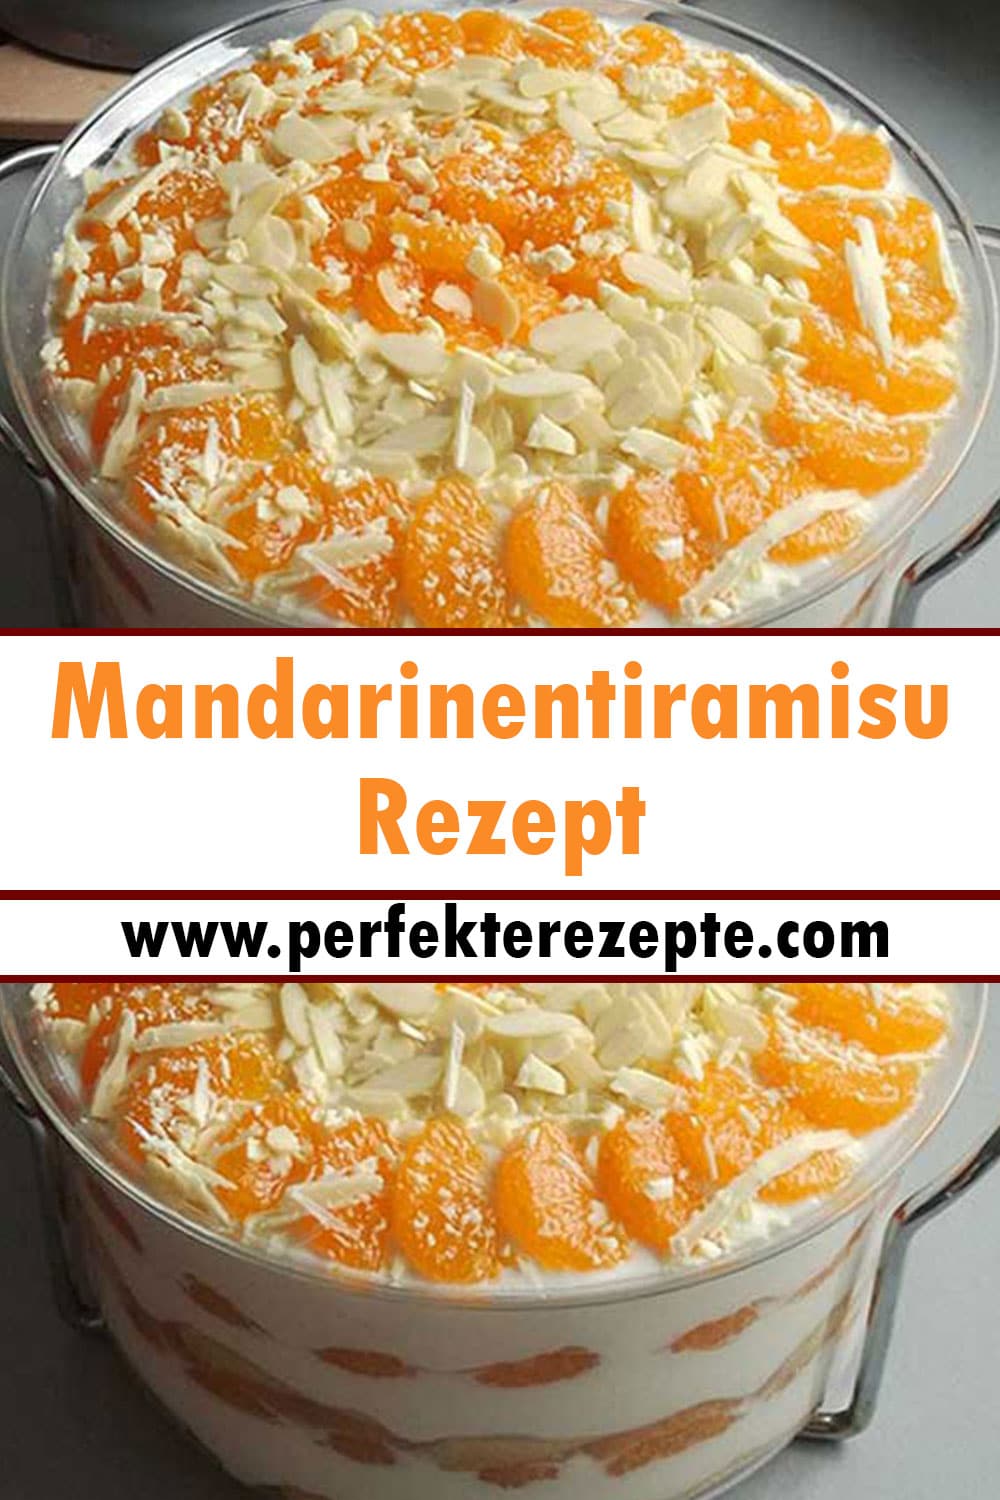 Mandarinentiramisu Rezept